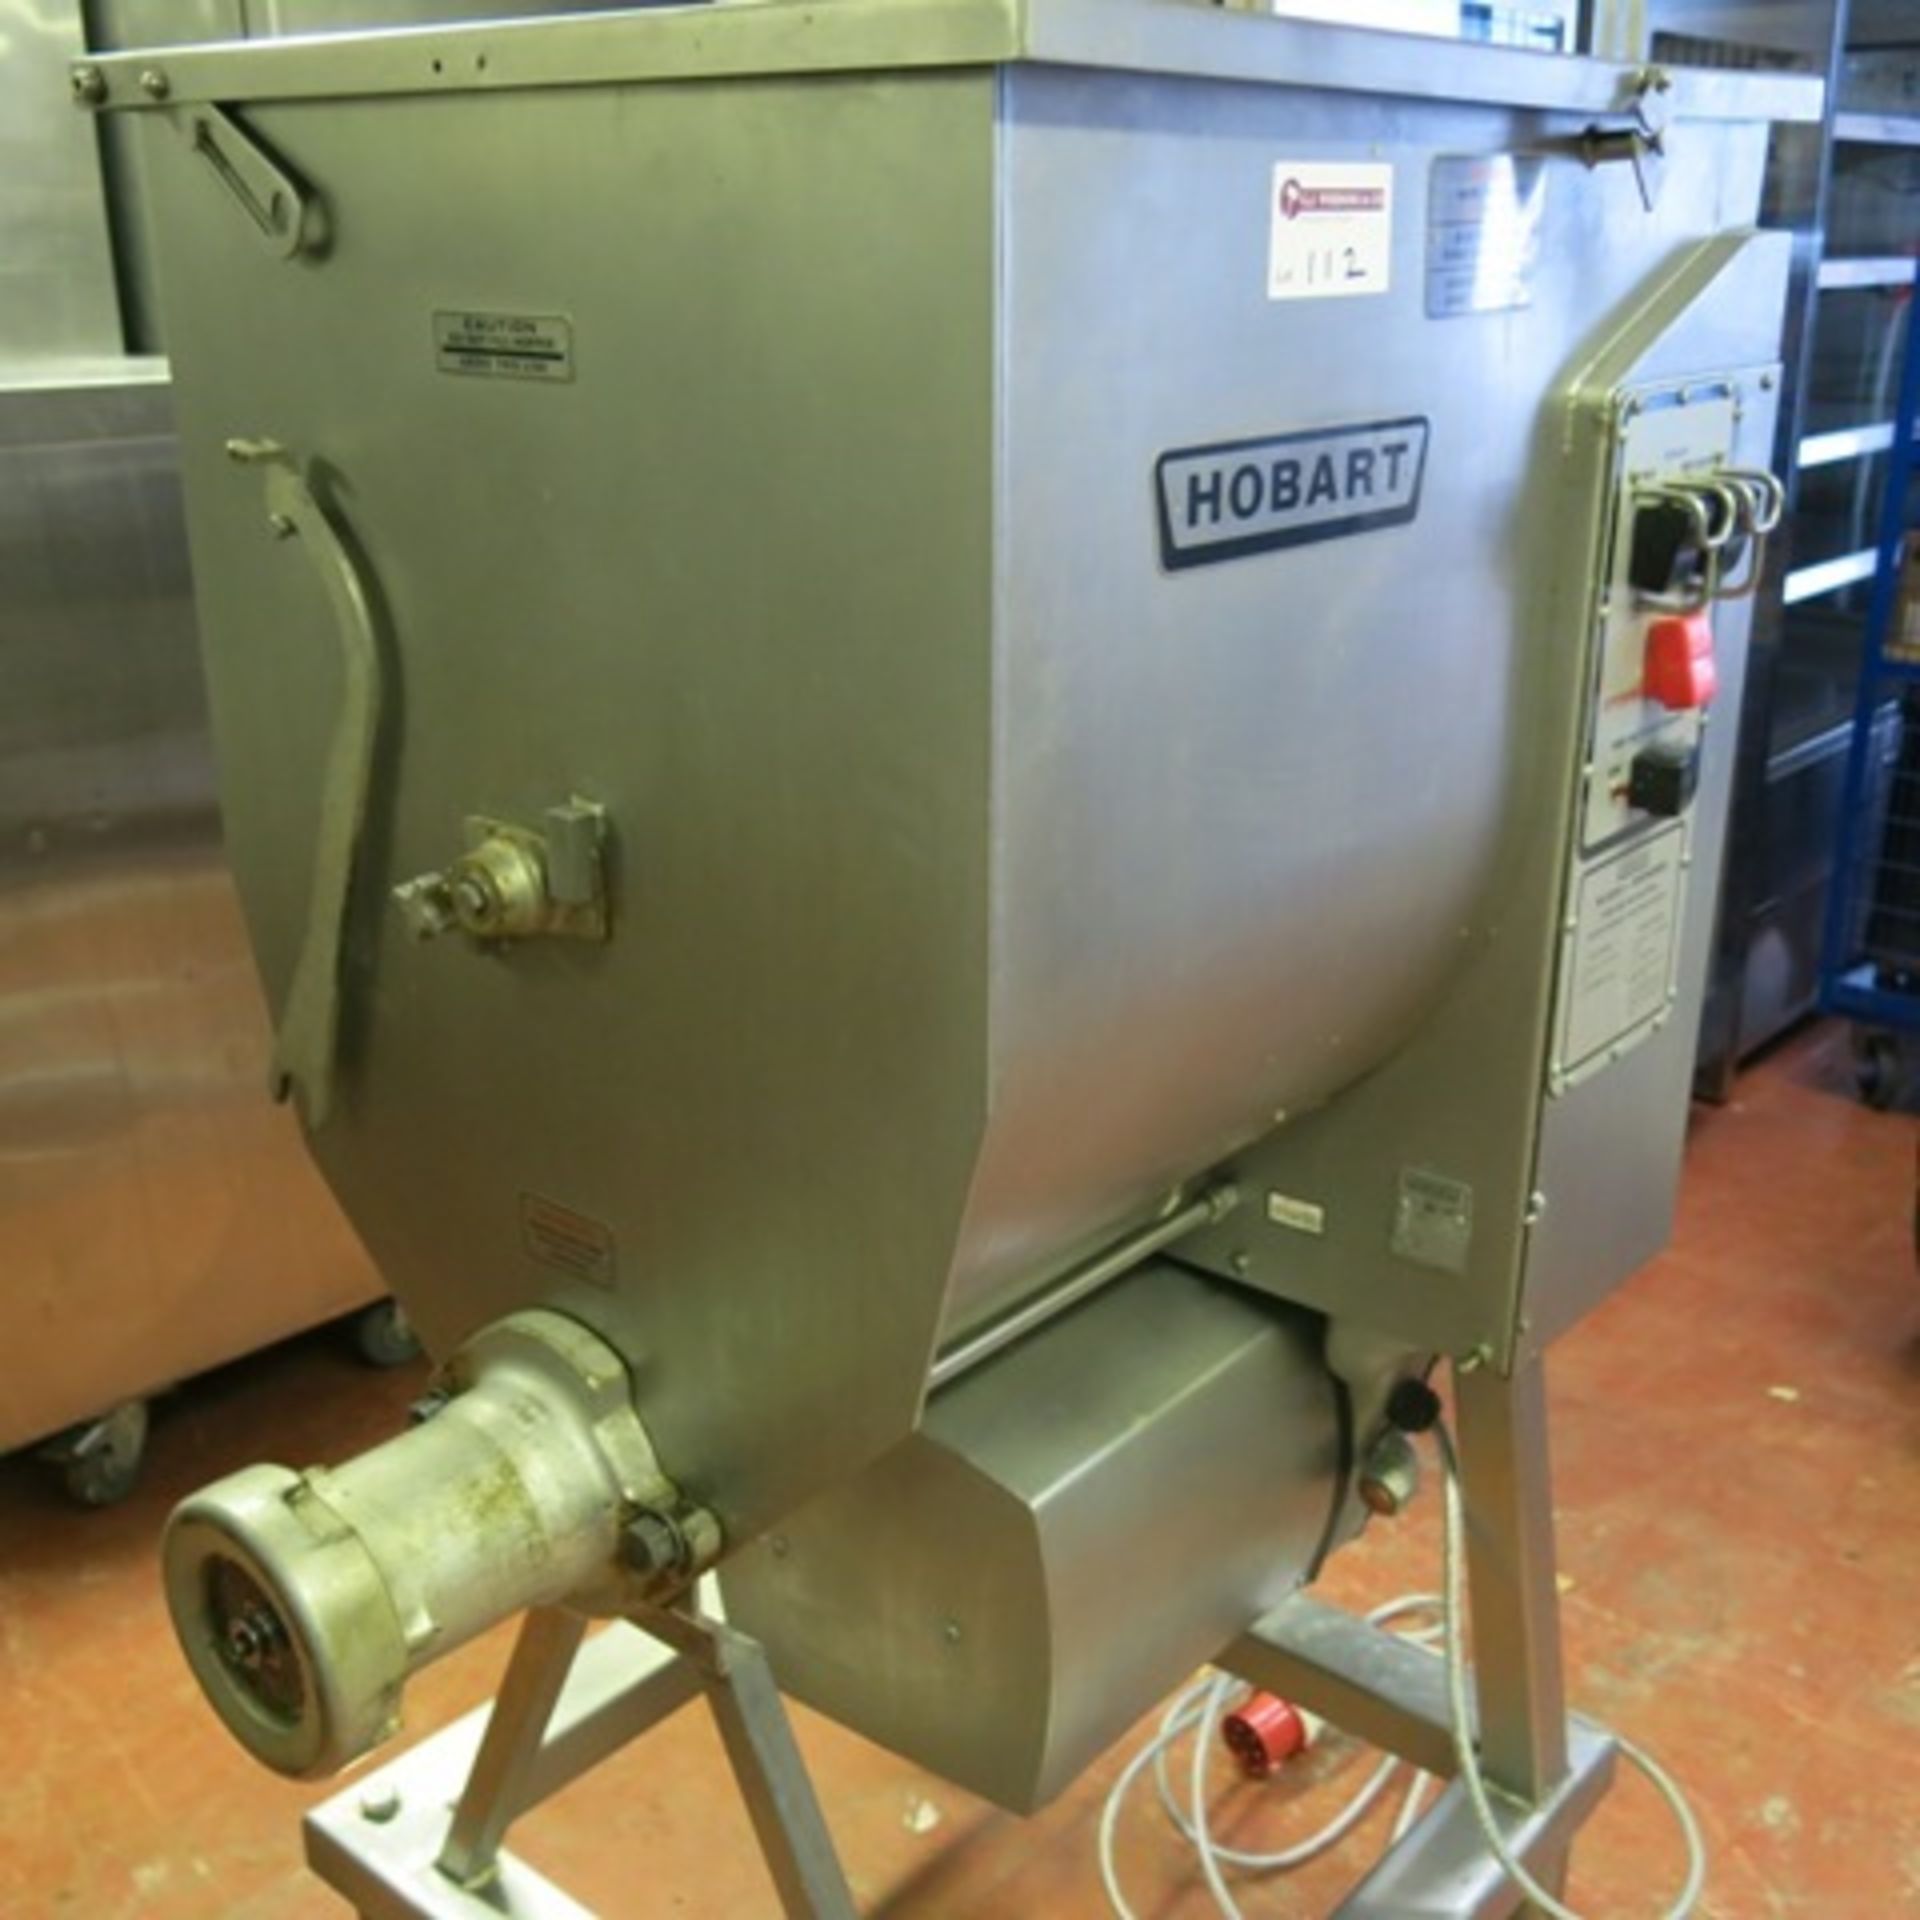 Hobart 4346 Commercial Mixer/Grinder on Frame & Castors, 3 Phase. Model 4346, S/N 27-028-654. With - Image 6 of 7